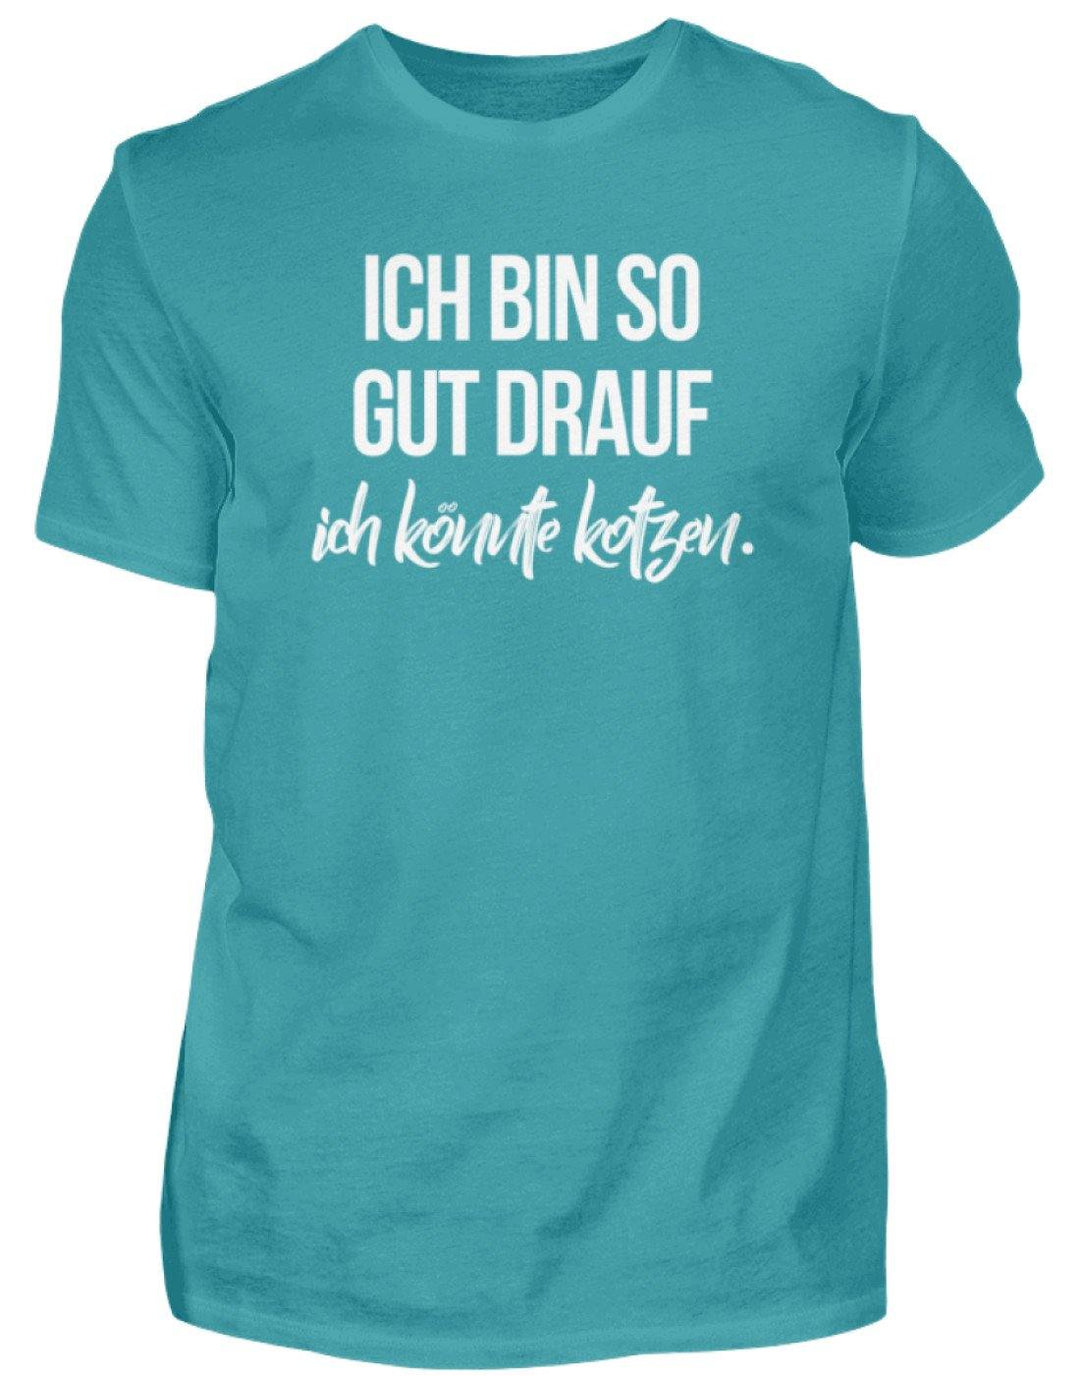 Gut Drauf Könnte Kotzen Words on Shirts  - Herren Shirt - Words on Shirts Sag es mit dem Mittelfinger Shirts Hoodies Sweatshirt Taschen Gymsack Spruch Sprüche Statement